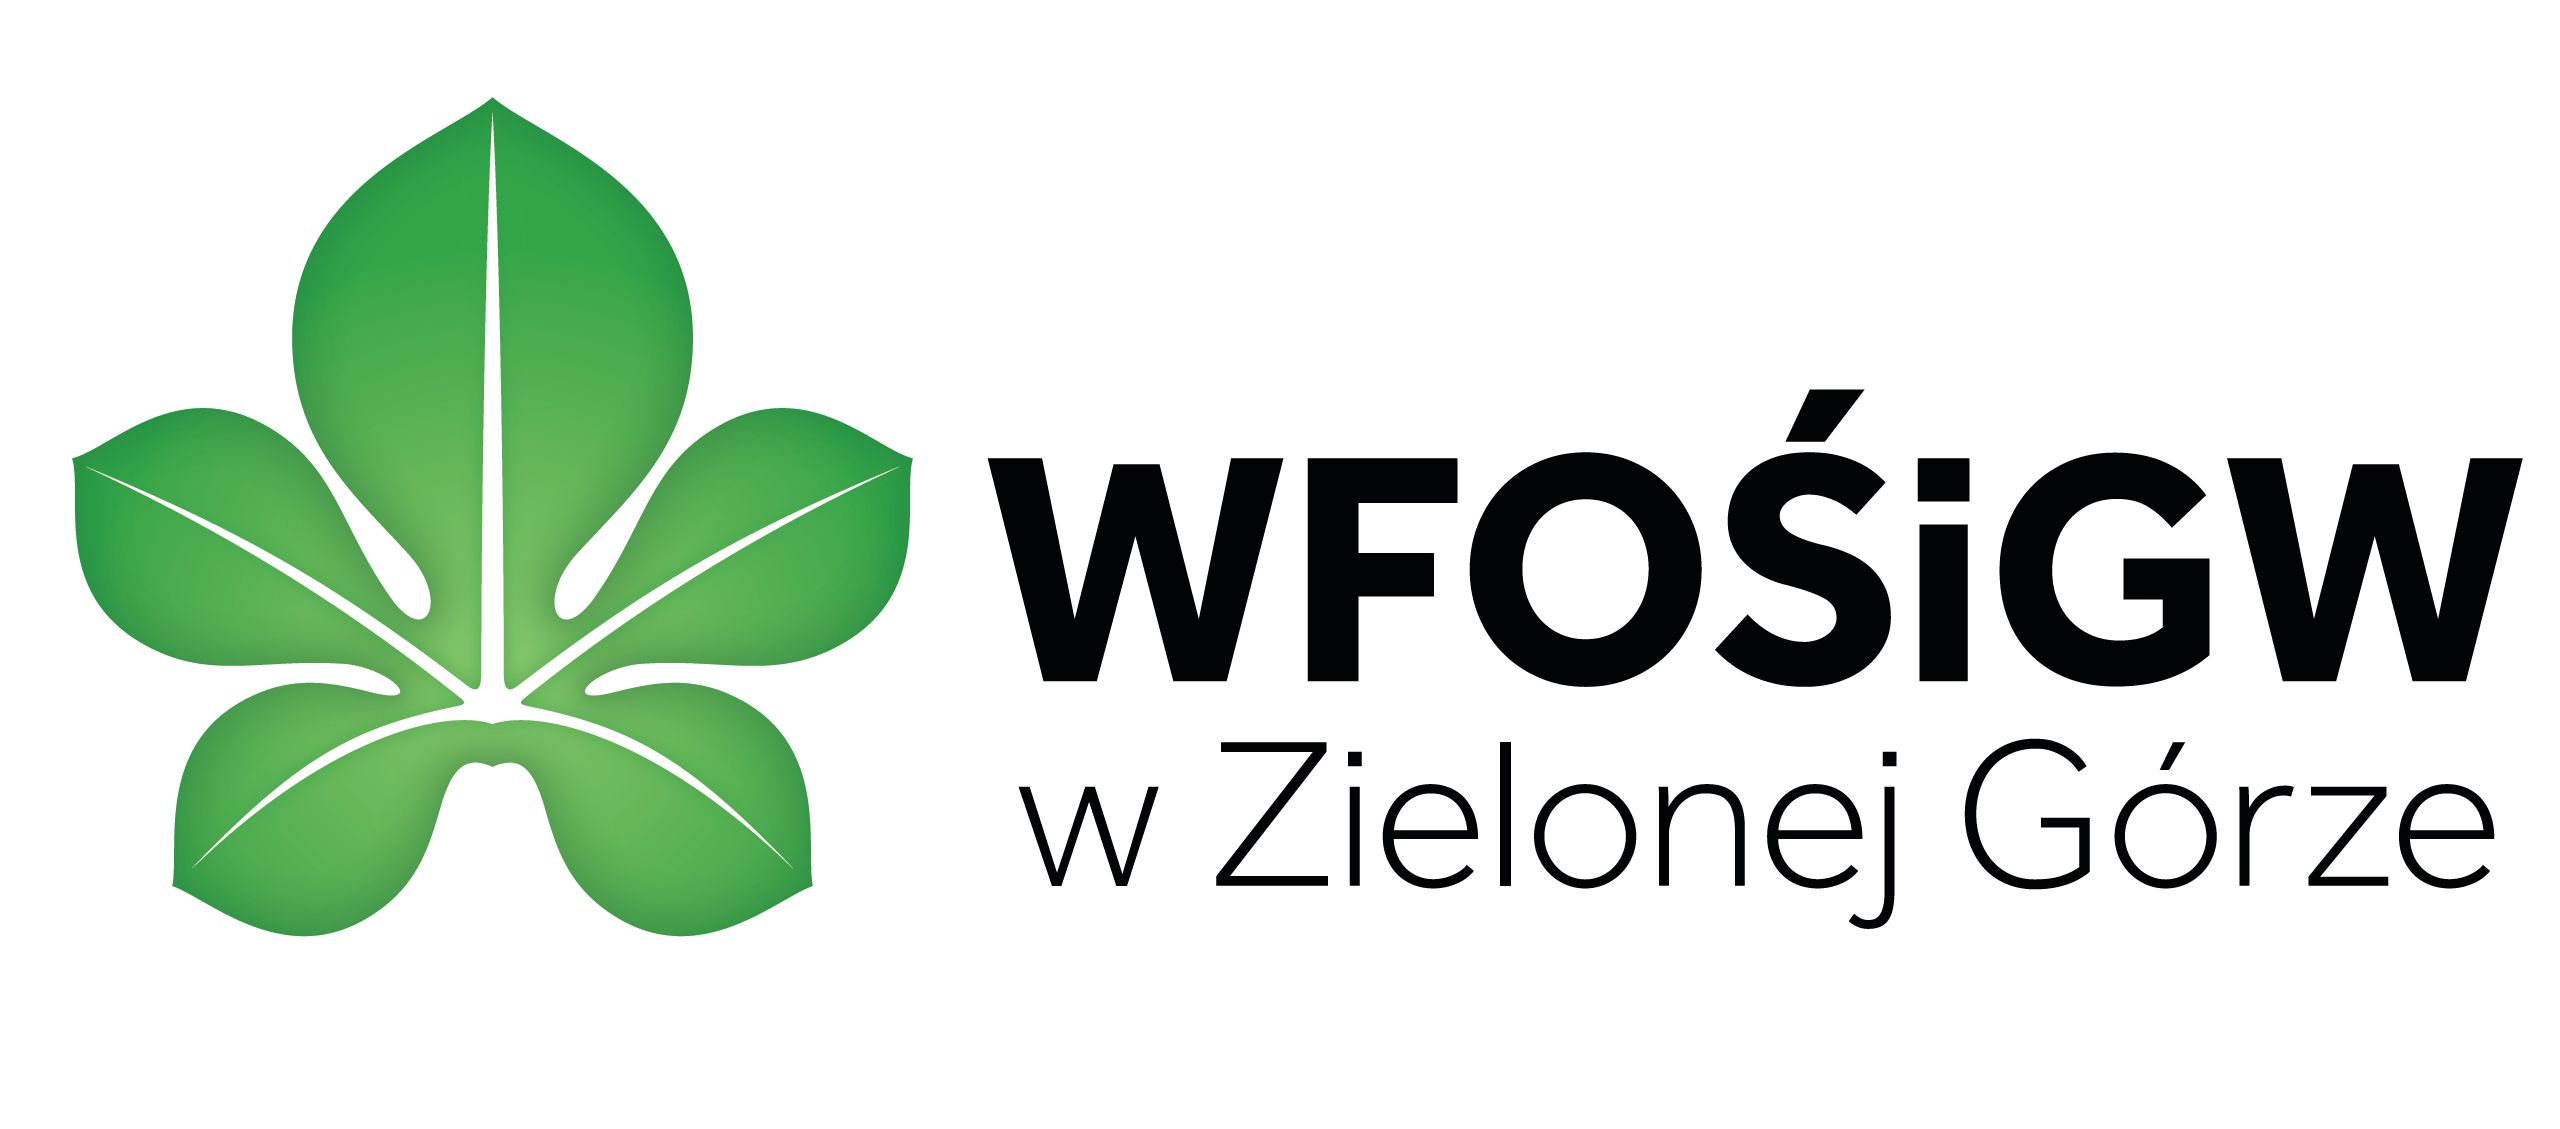 wfosigw logo 1